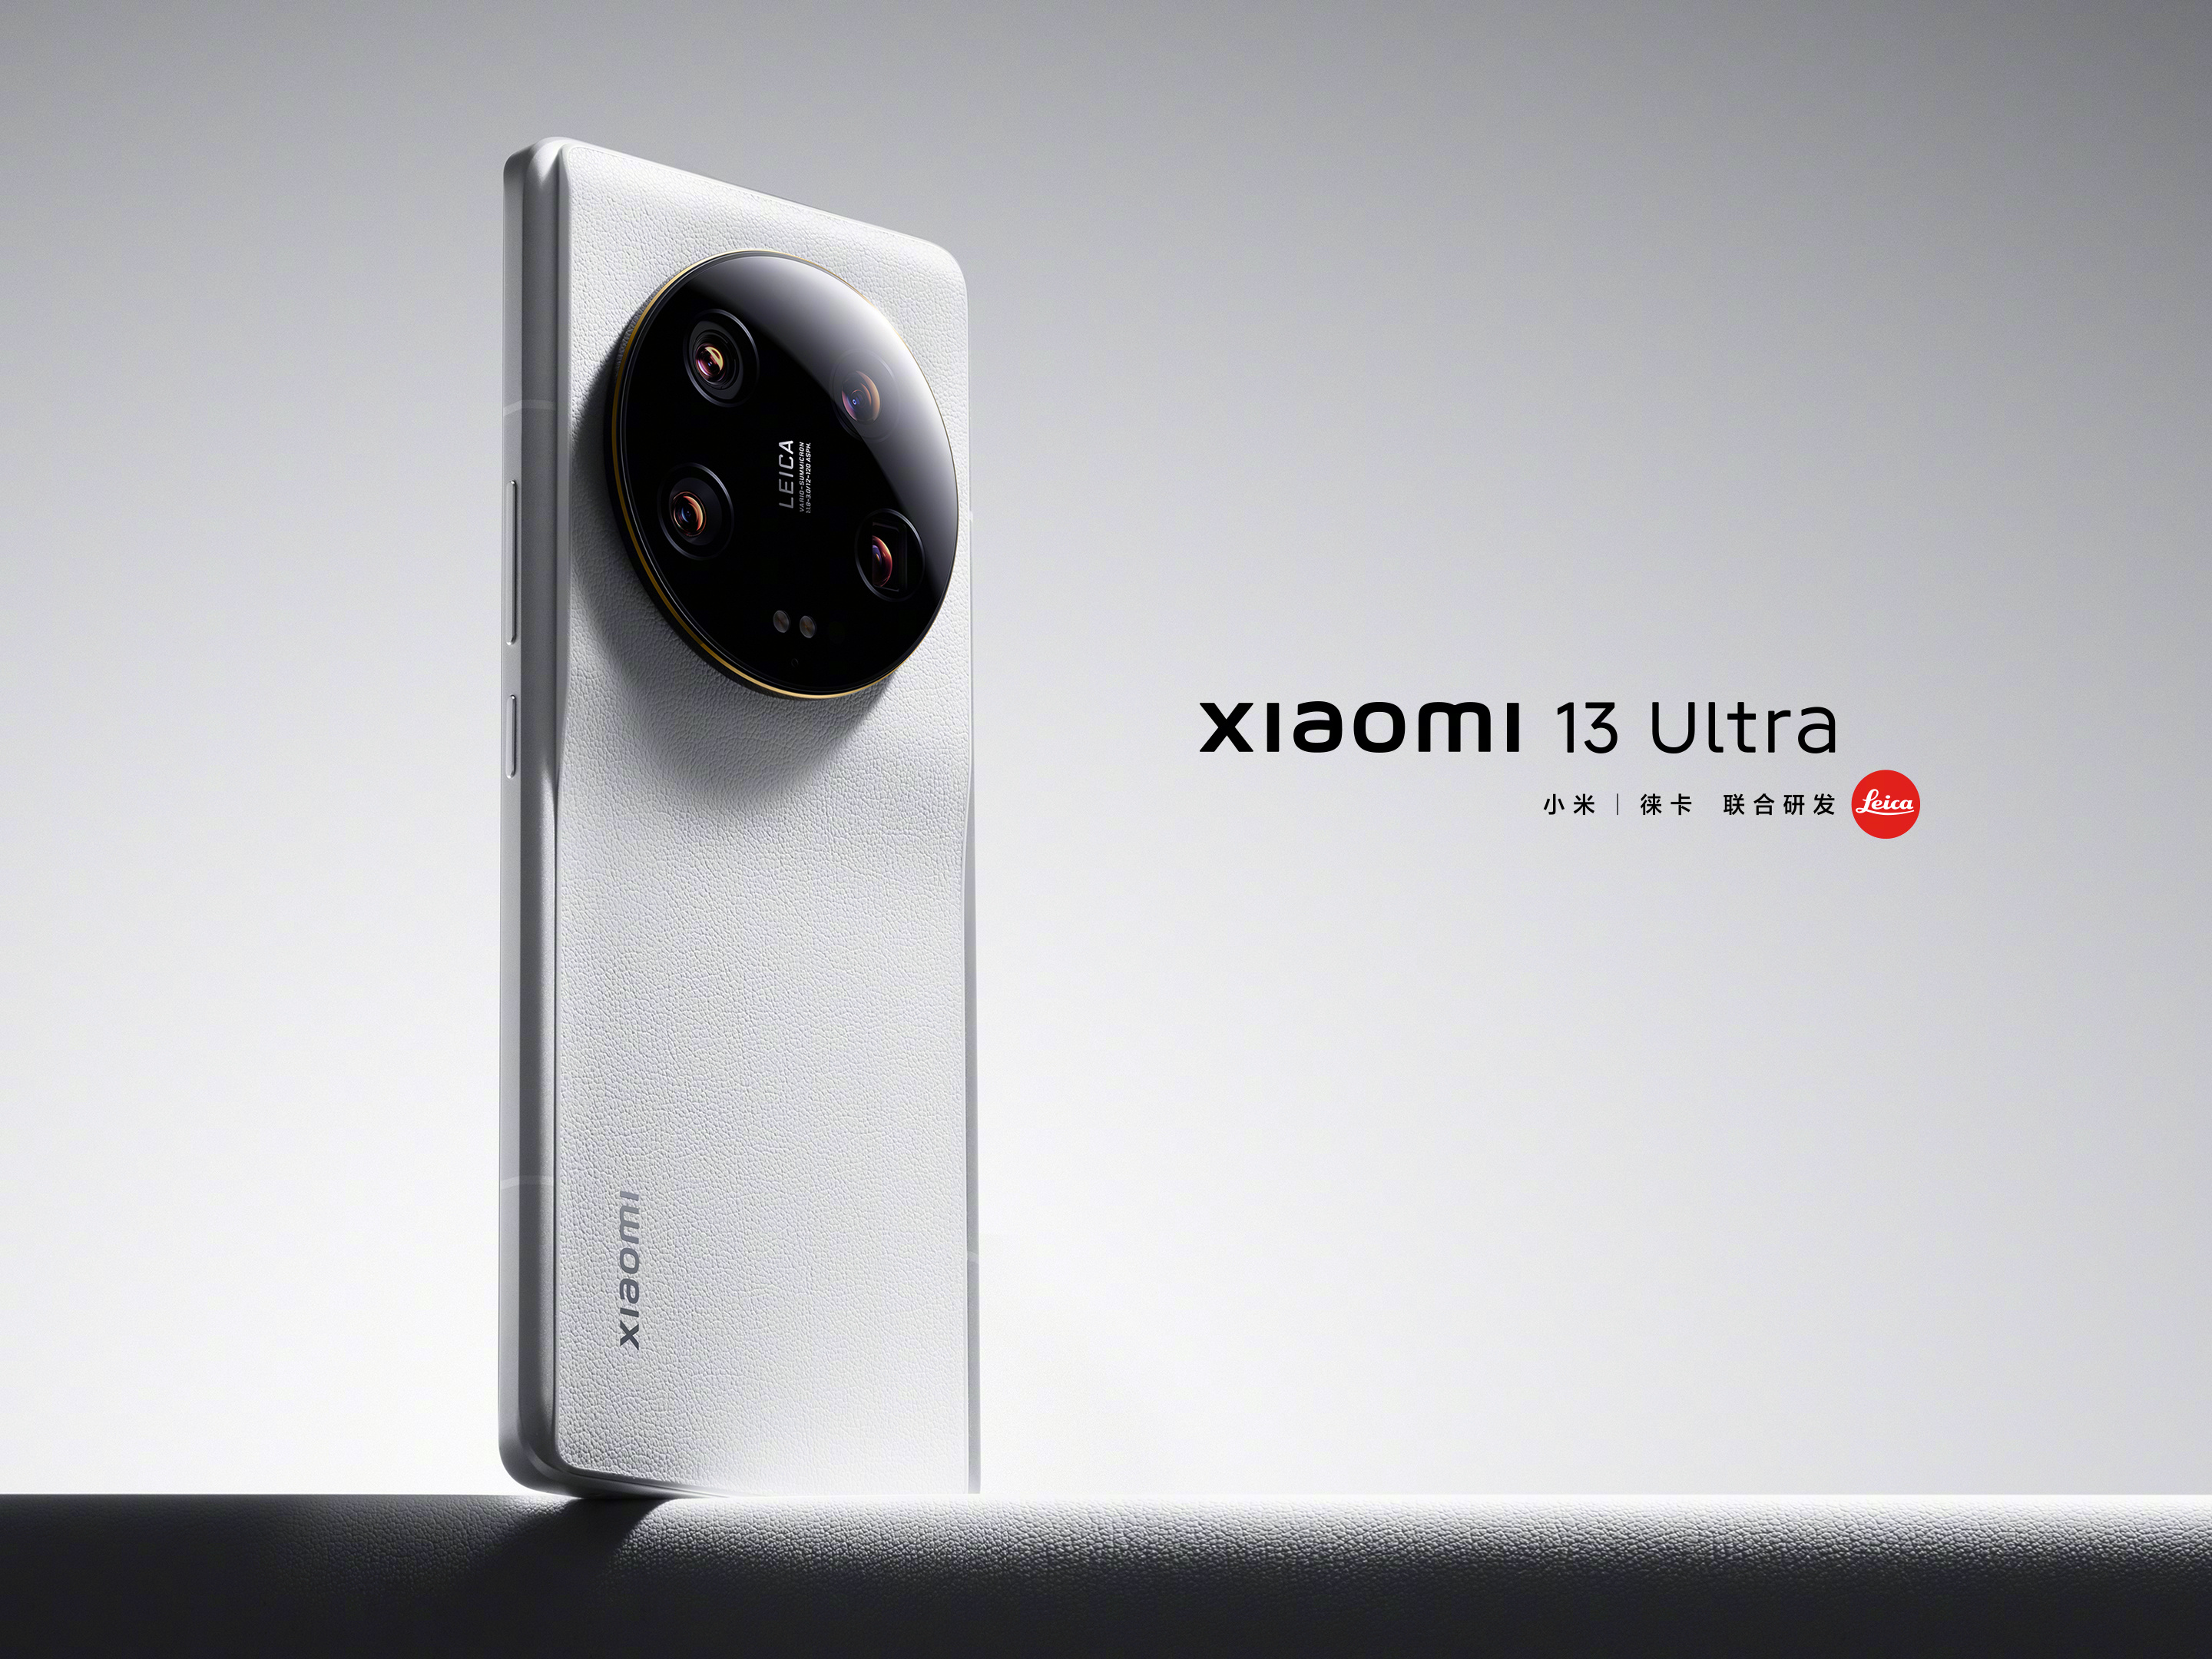 Prima del lancio: Xiaomi rivela l'aspetto dell'ammiraglia Xiaomi 13 Ultra con una fotocamera Leica gigante